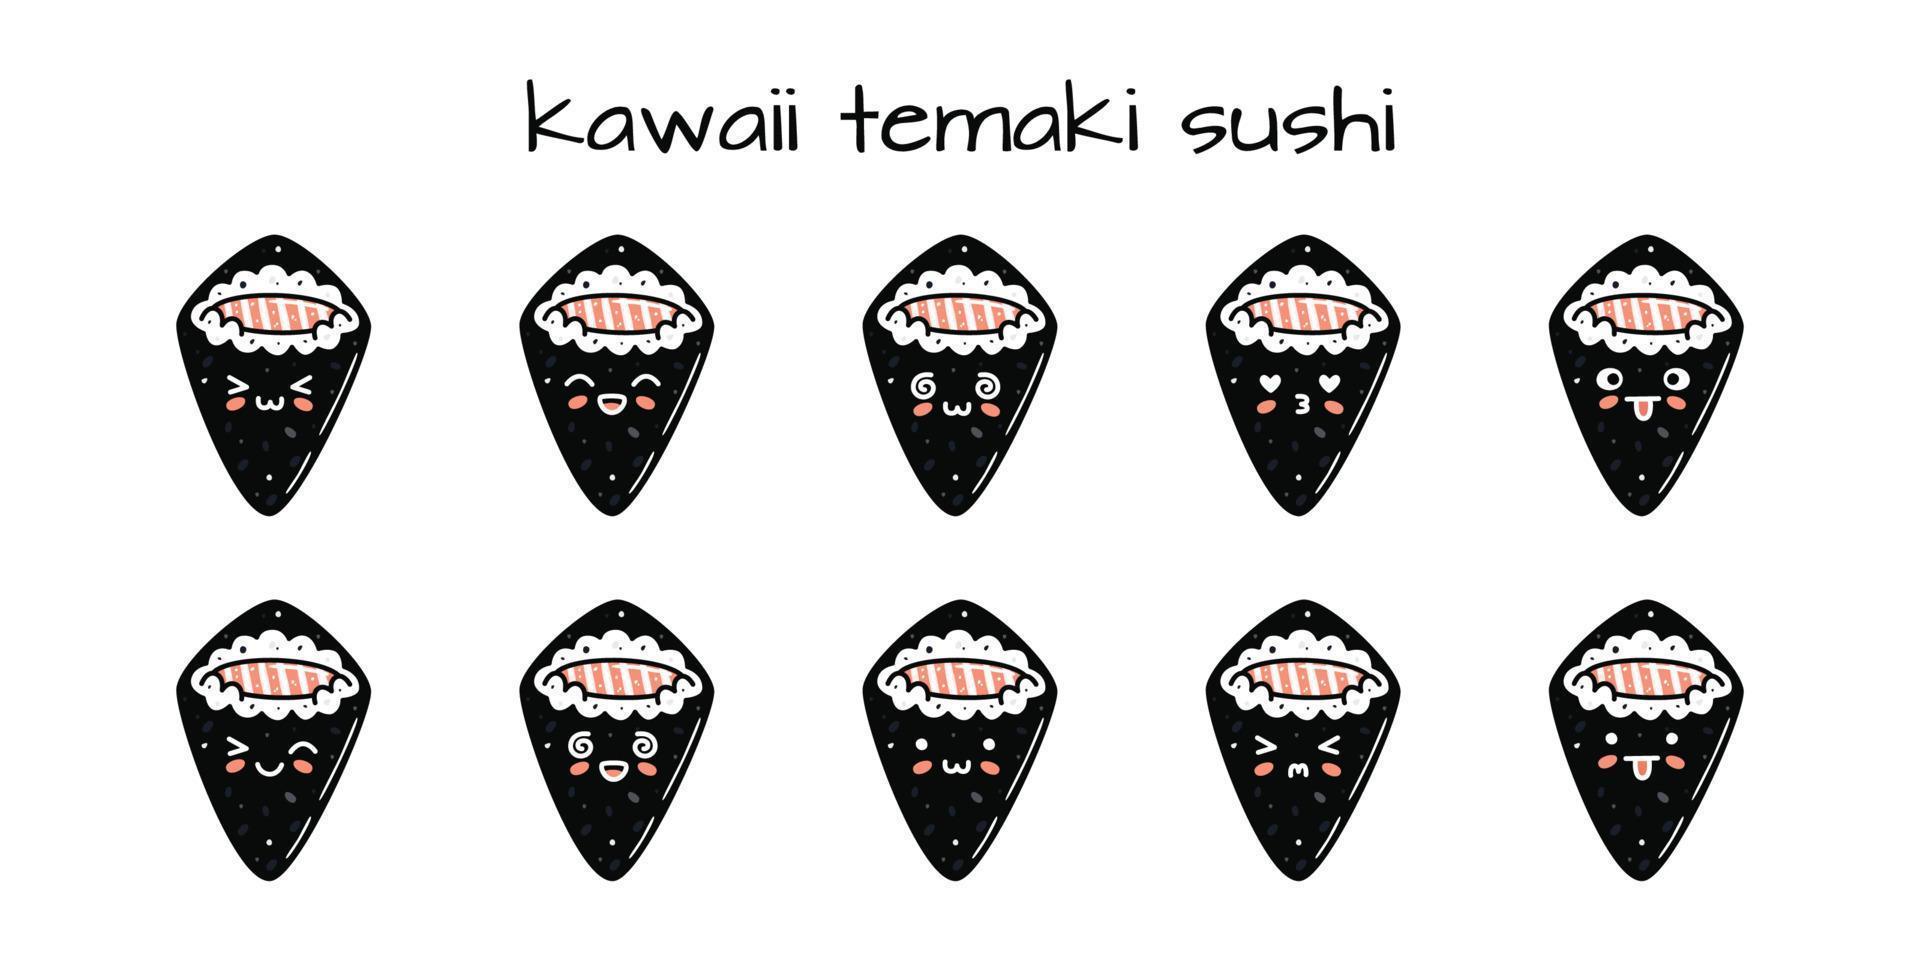 impostato di kawaii temaki Sushi mascotte nel cartone animato stile vettore